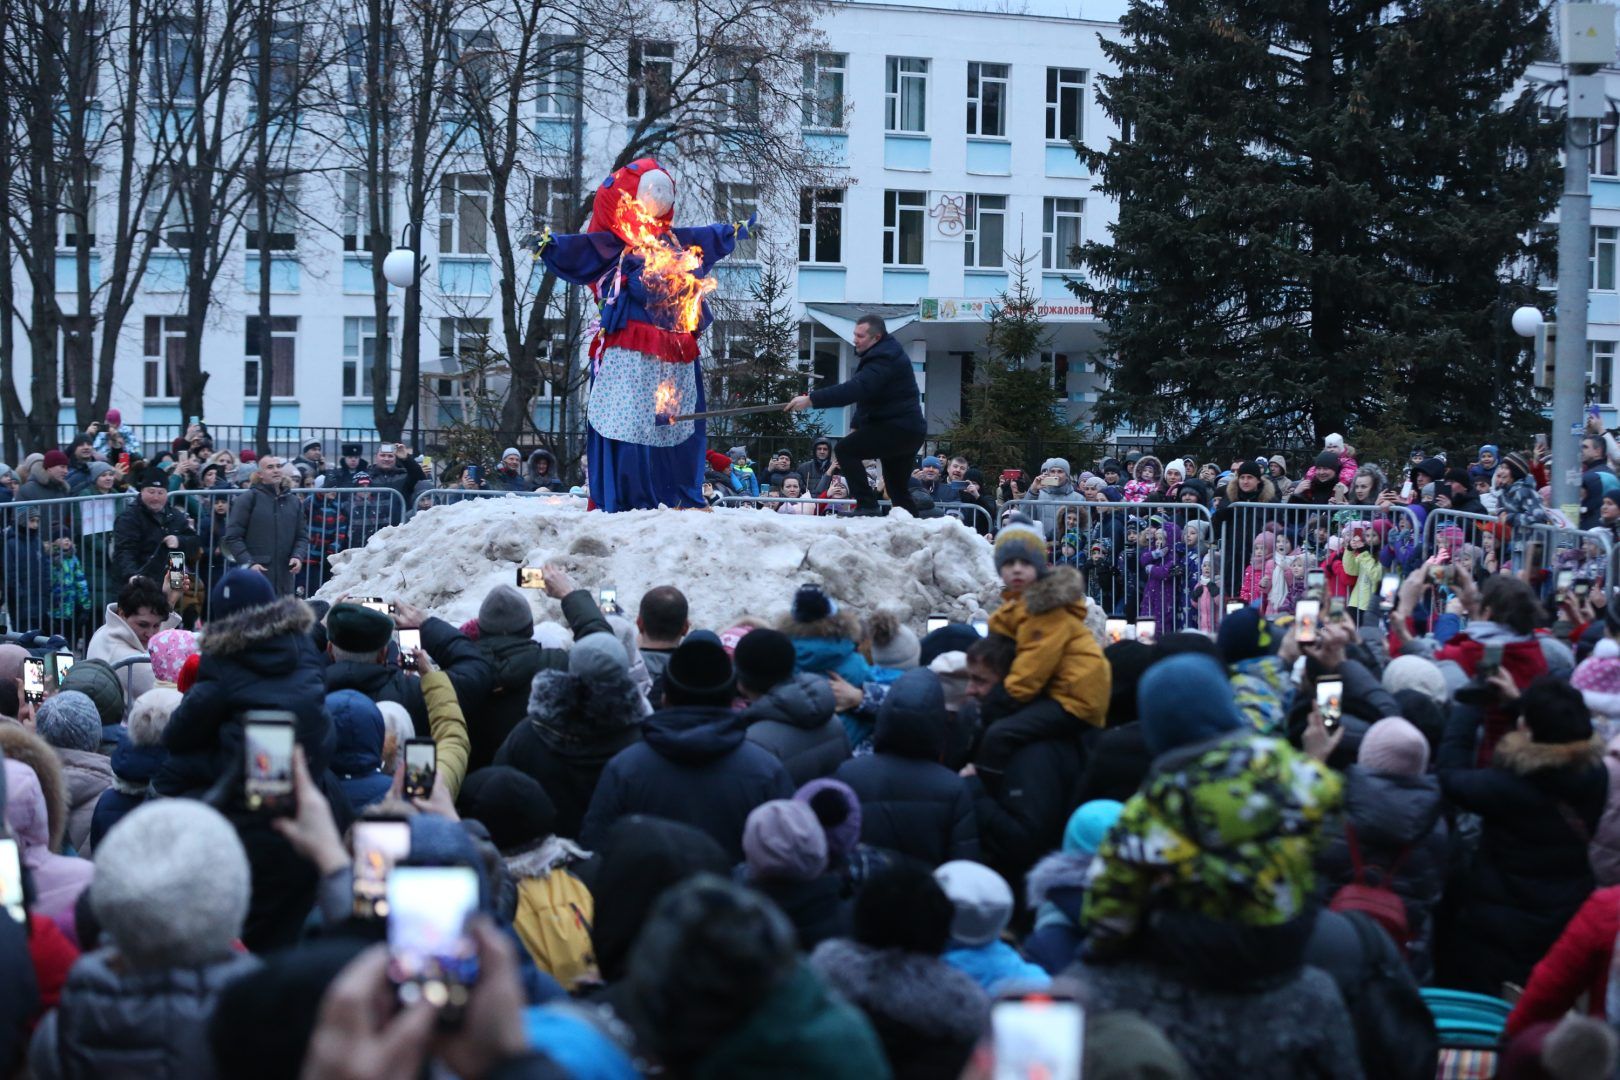  А на площади перед Дворцом культуры сожгли чучело Масленицы. Фото: Виктор Хабаров